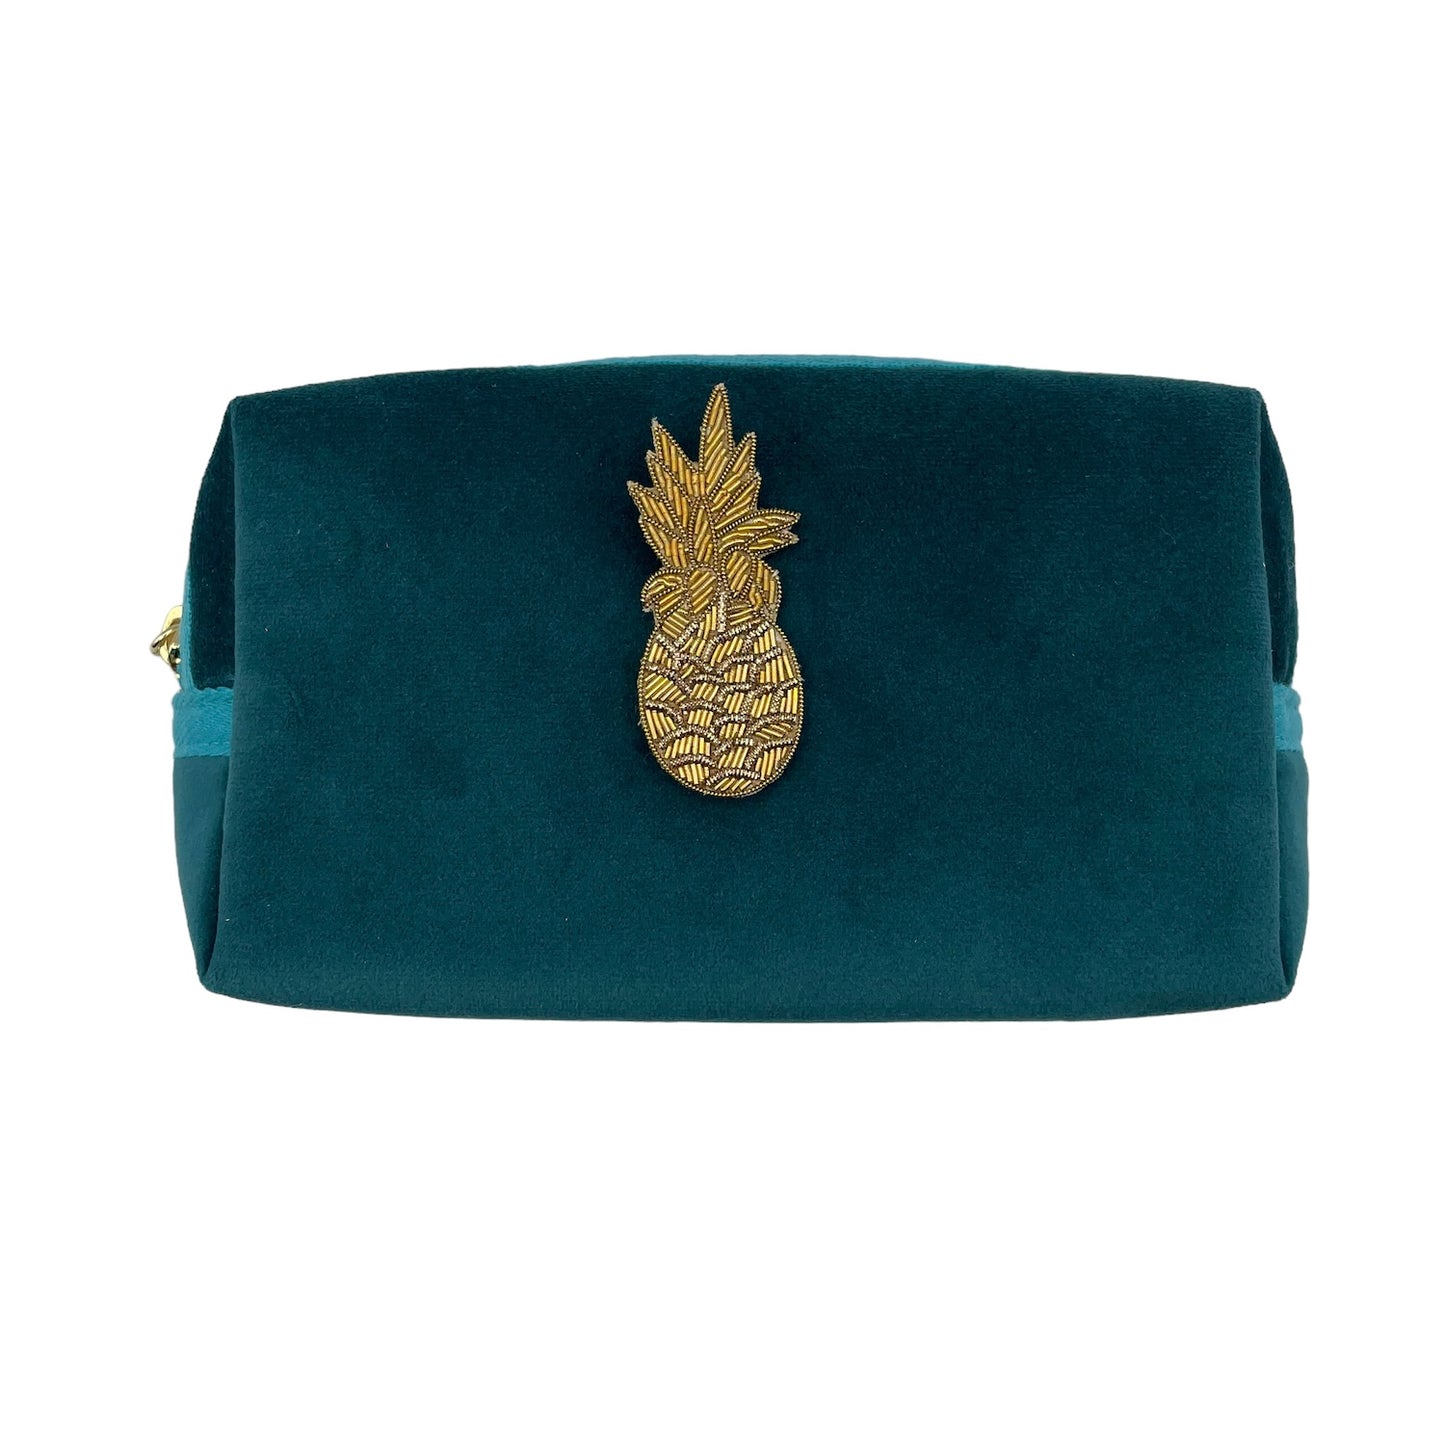 Teal make-up bag & pineapple pin - recycled velvet